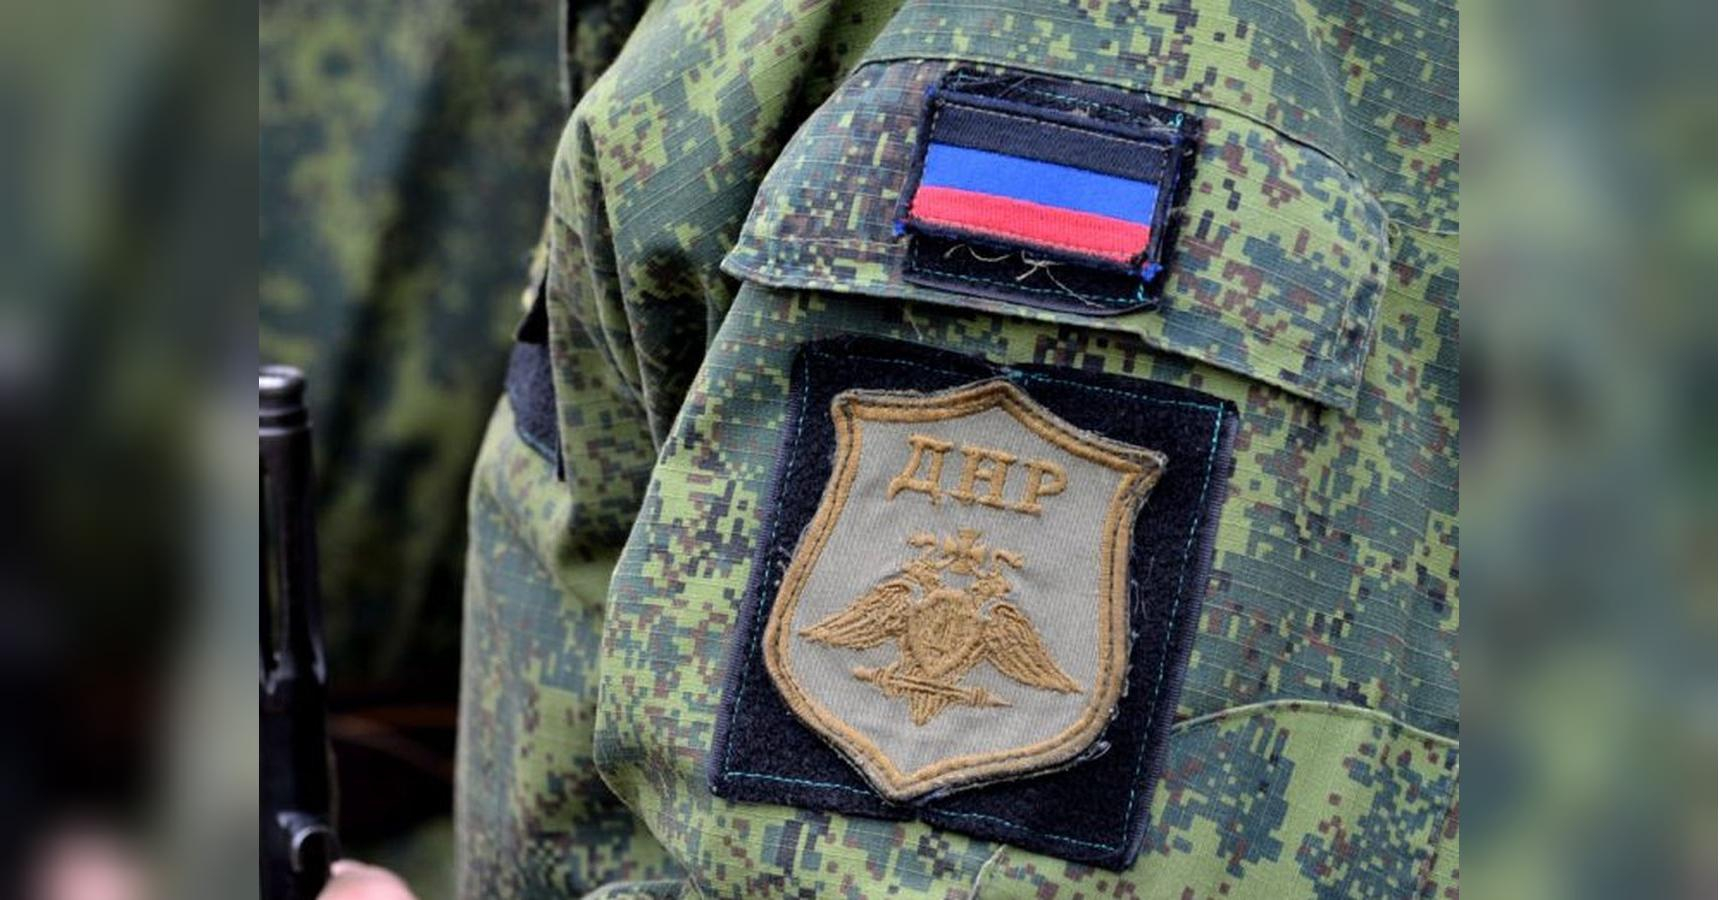 Боевики на Донбассе спамят смс-сообщениями с целью психологического воздействия, - разведка